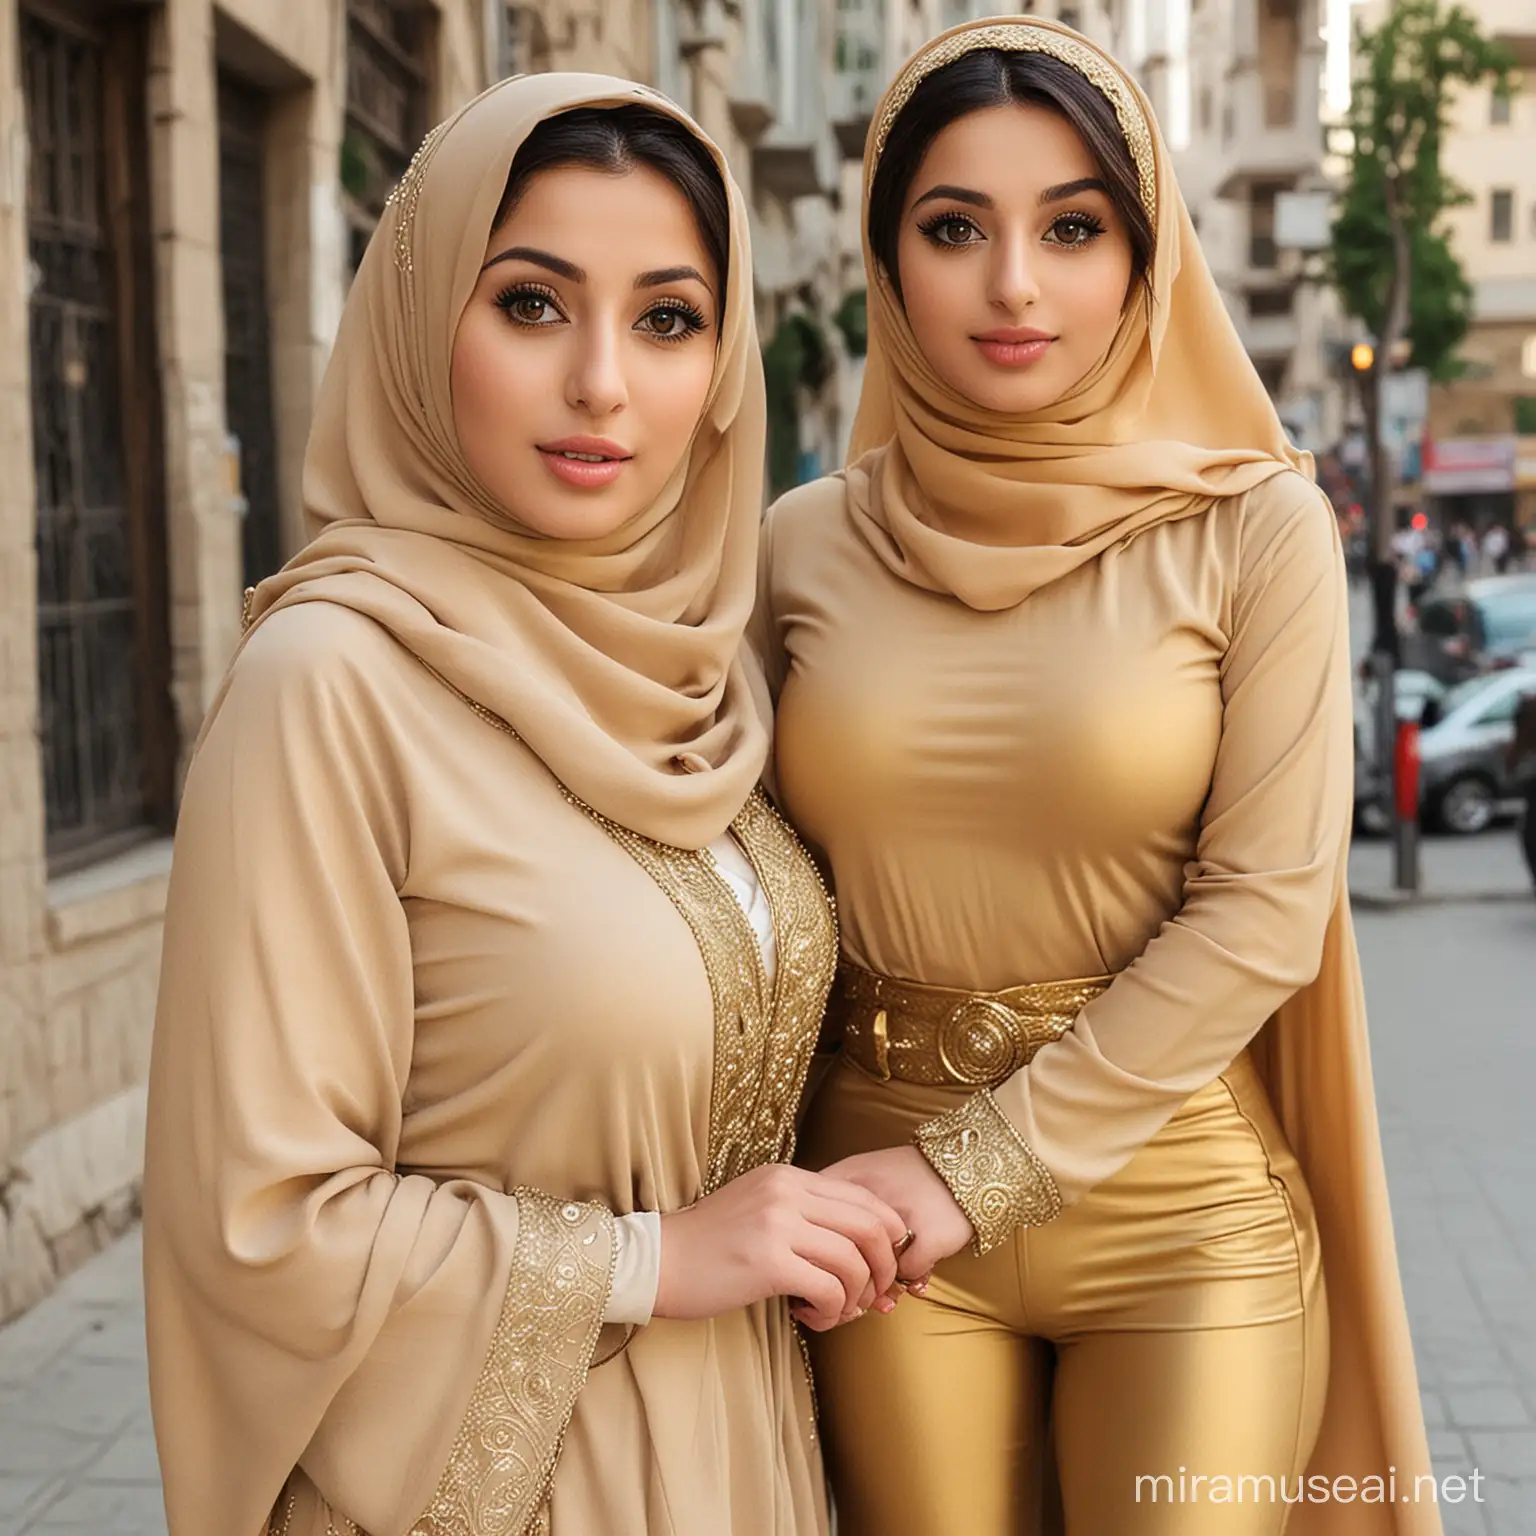 دوختر زیبای حجابی ایرانی، خیلی زیبا چشم کلان با حجابی طلای در کمر شان کمر بند دارن و رانهای بزرگ و سکسی دارند در پاهایشان چپلک پاشینه بلند دارند و سینه های بزرگ دارند